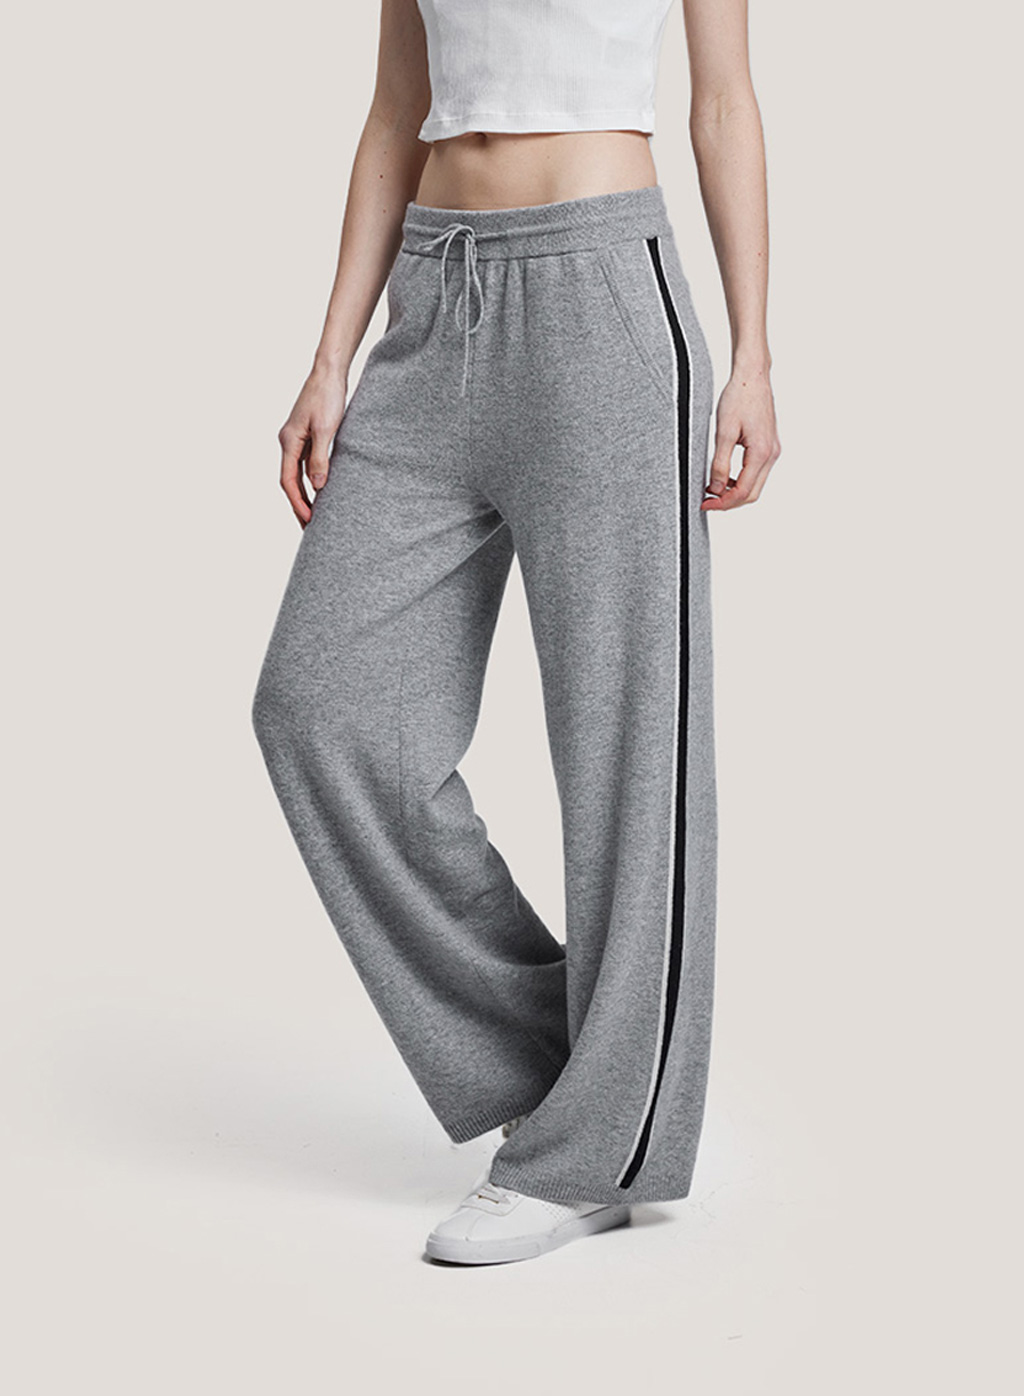 Pants | Nap Loungewear